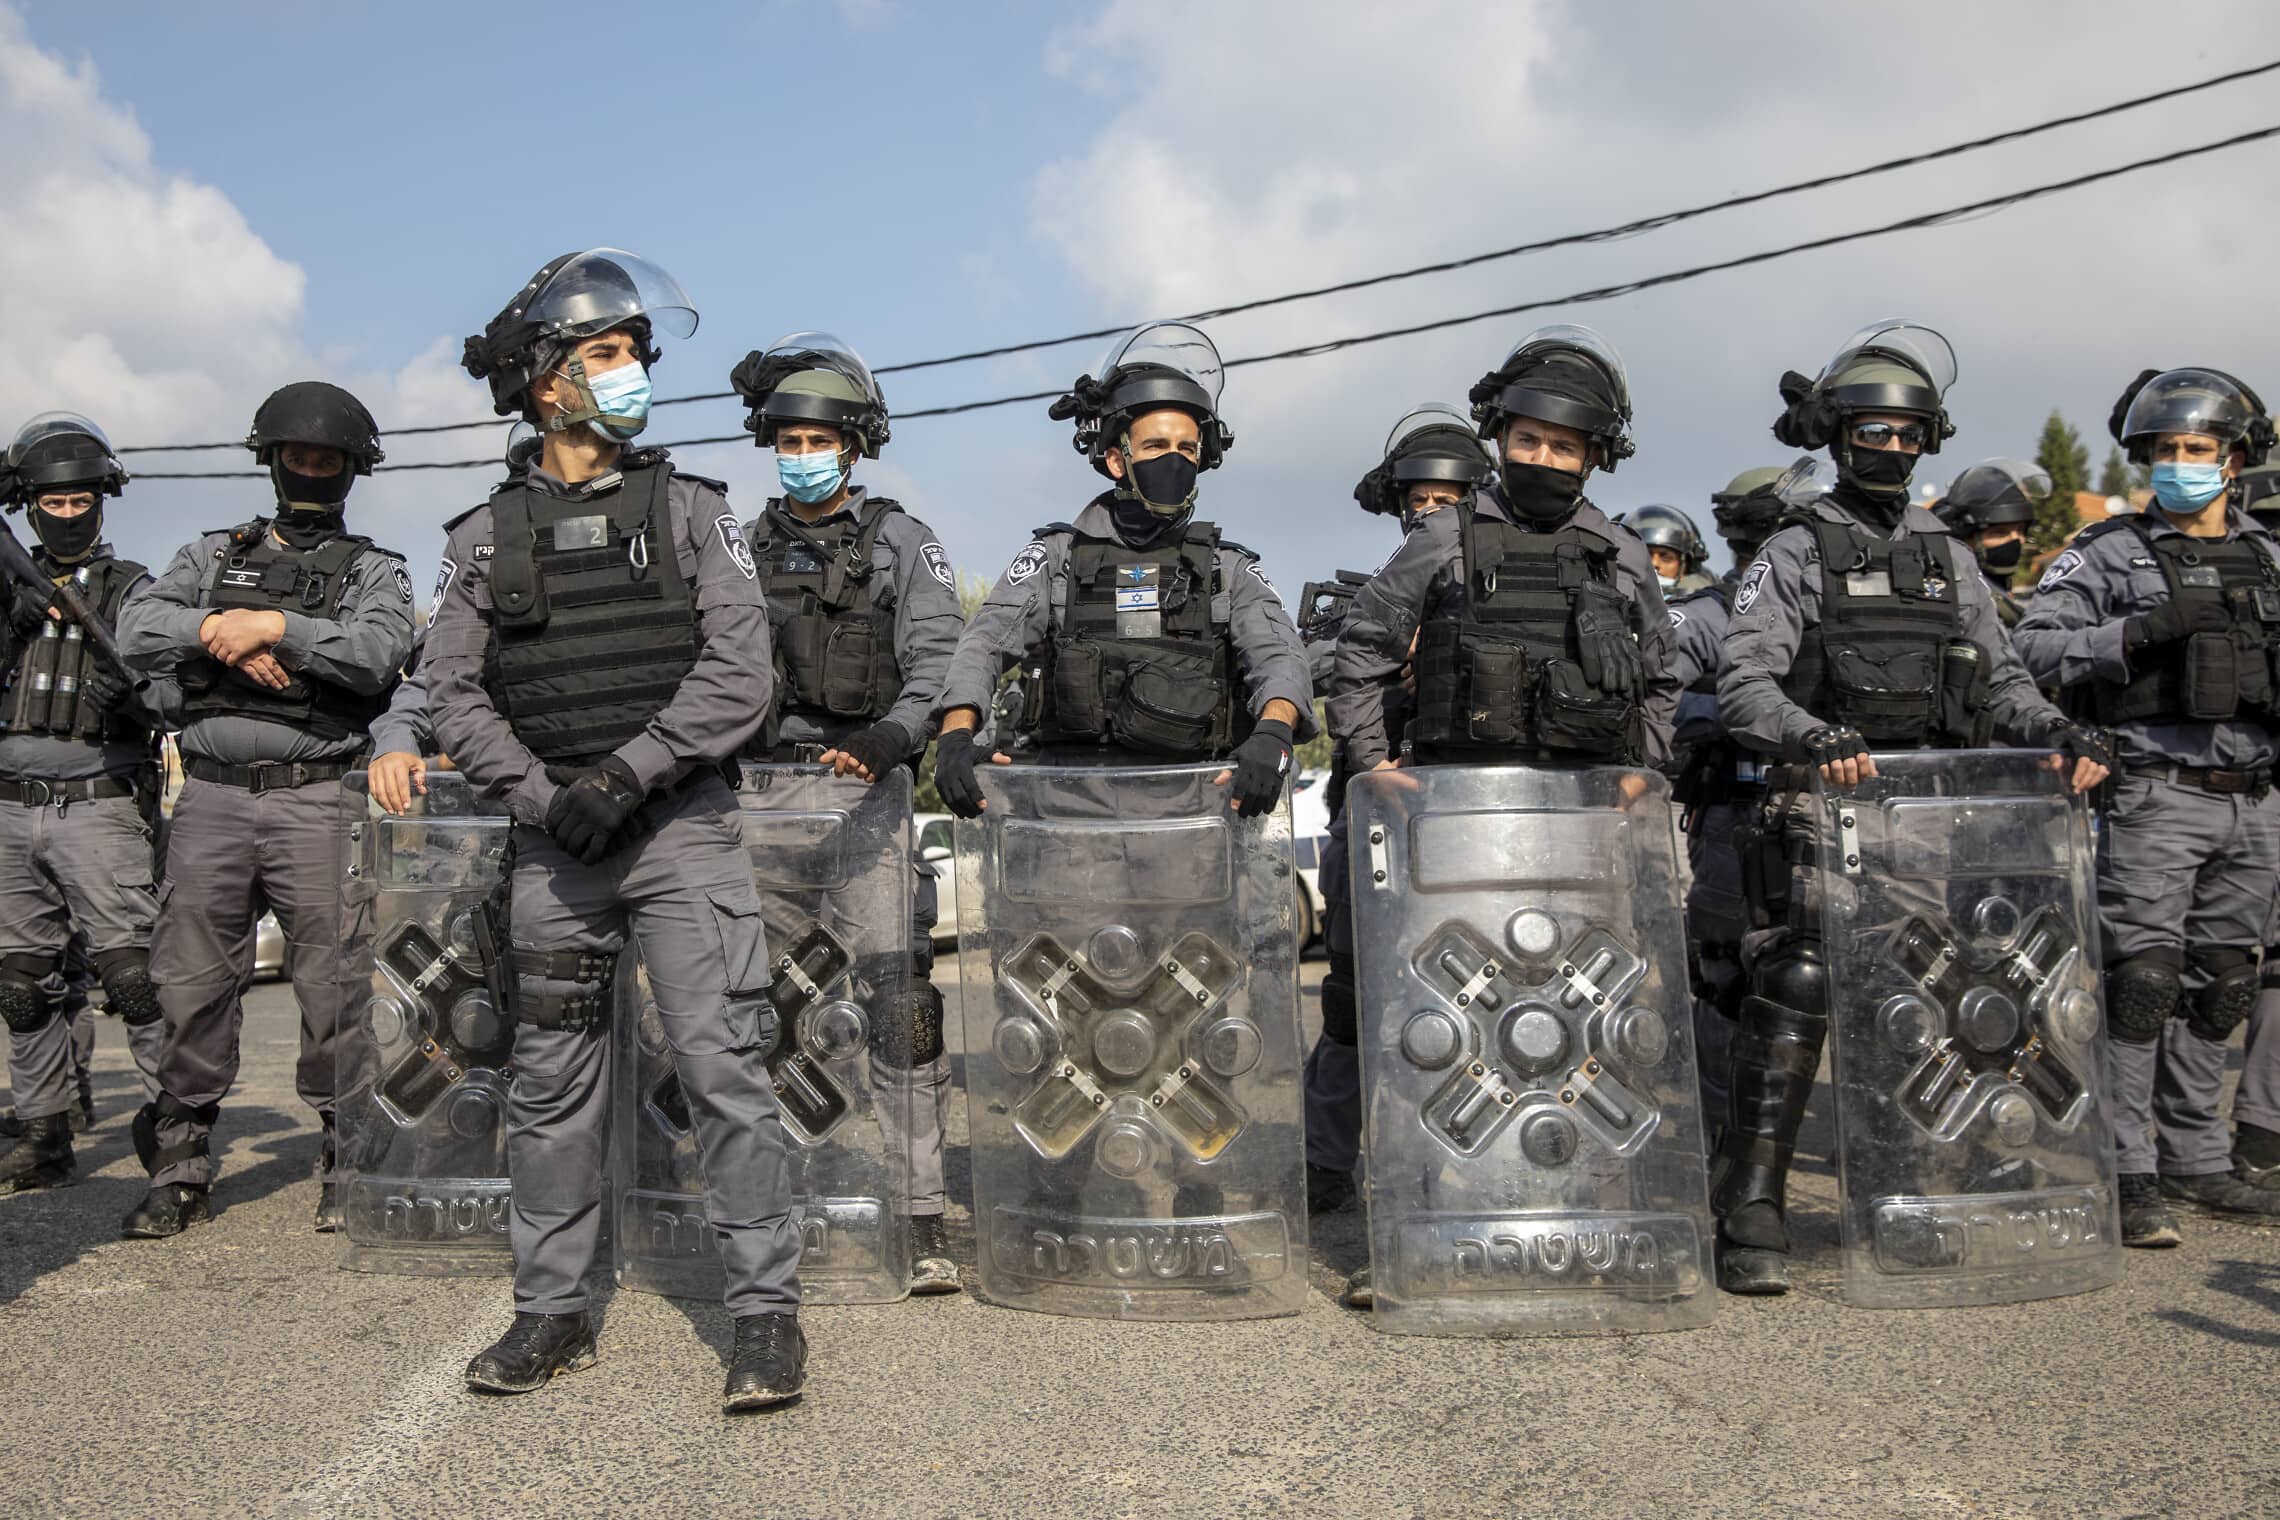 כוחות משטרה מתאספים באום אל-פחם לפיזור הפגנה, פברואר 2021 (צילום: AP Photo/Ariel Schalit)